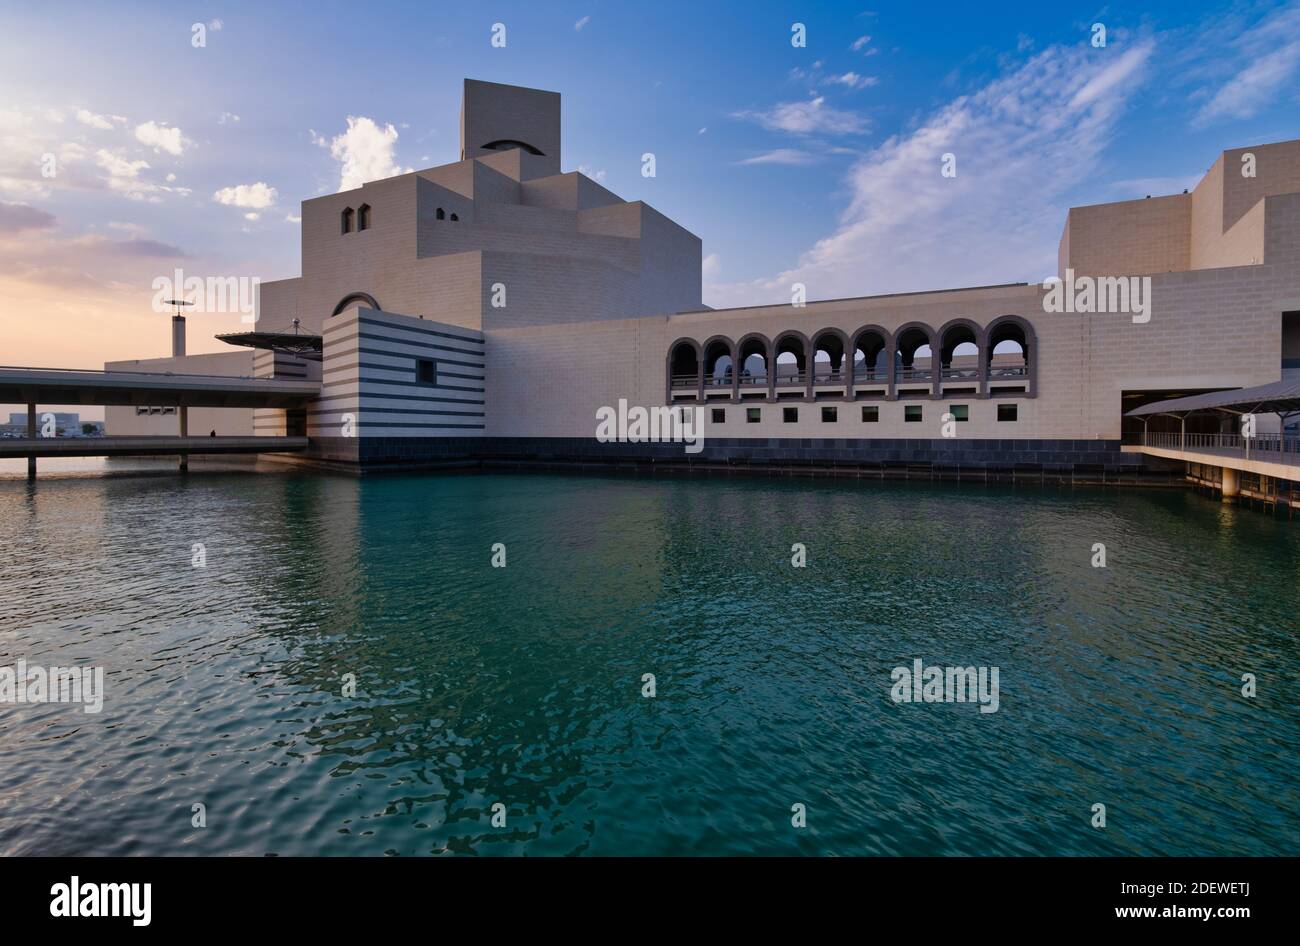 Museo d'Arte Islamica, Doha, Qatar al tramonto, vista esterna che mostra l'architettura moderna dell'edificio e le nuvole nel cielo sullo sfondo Foto Stock